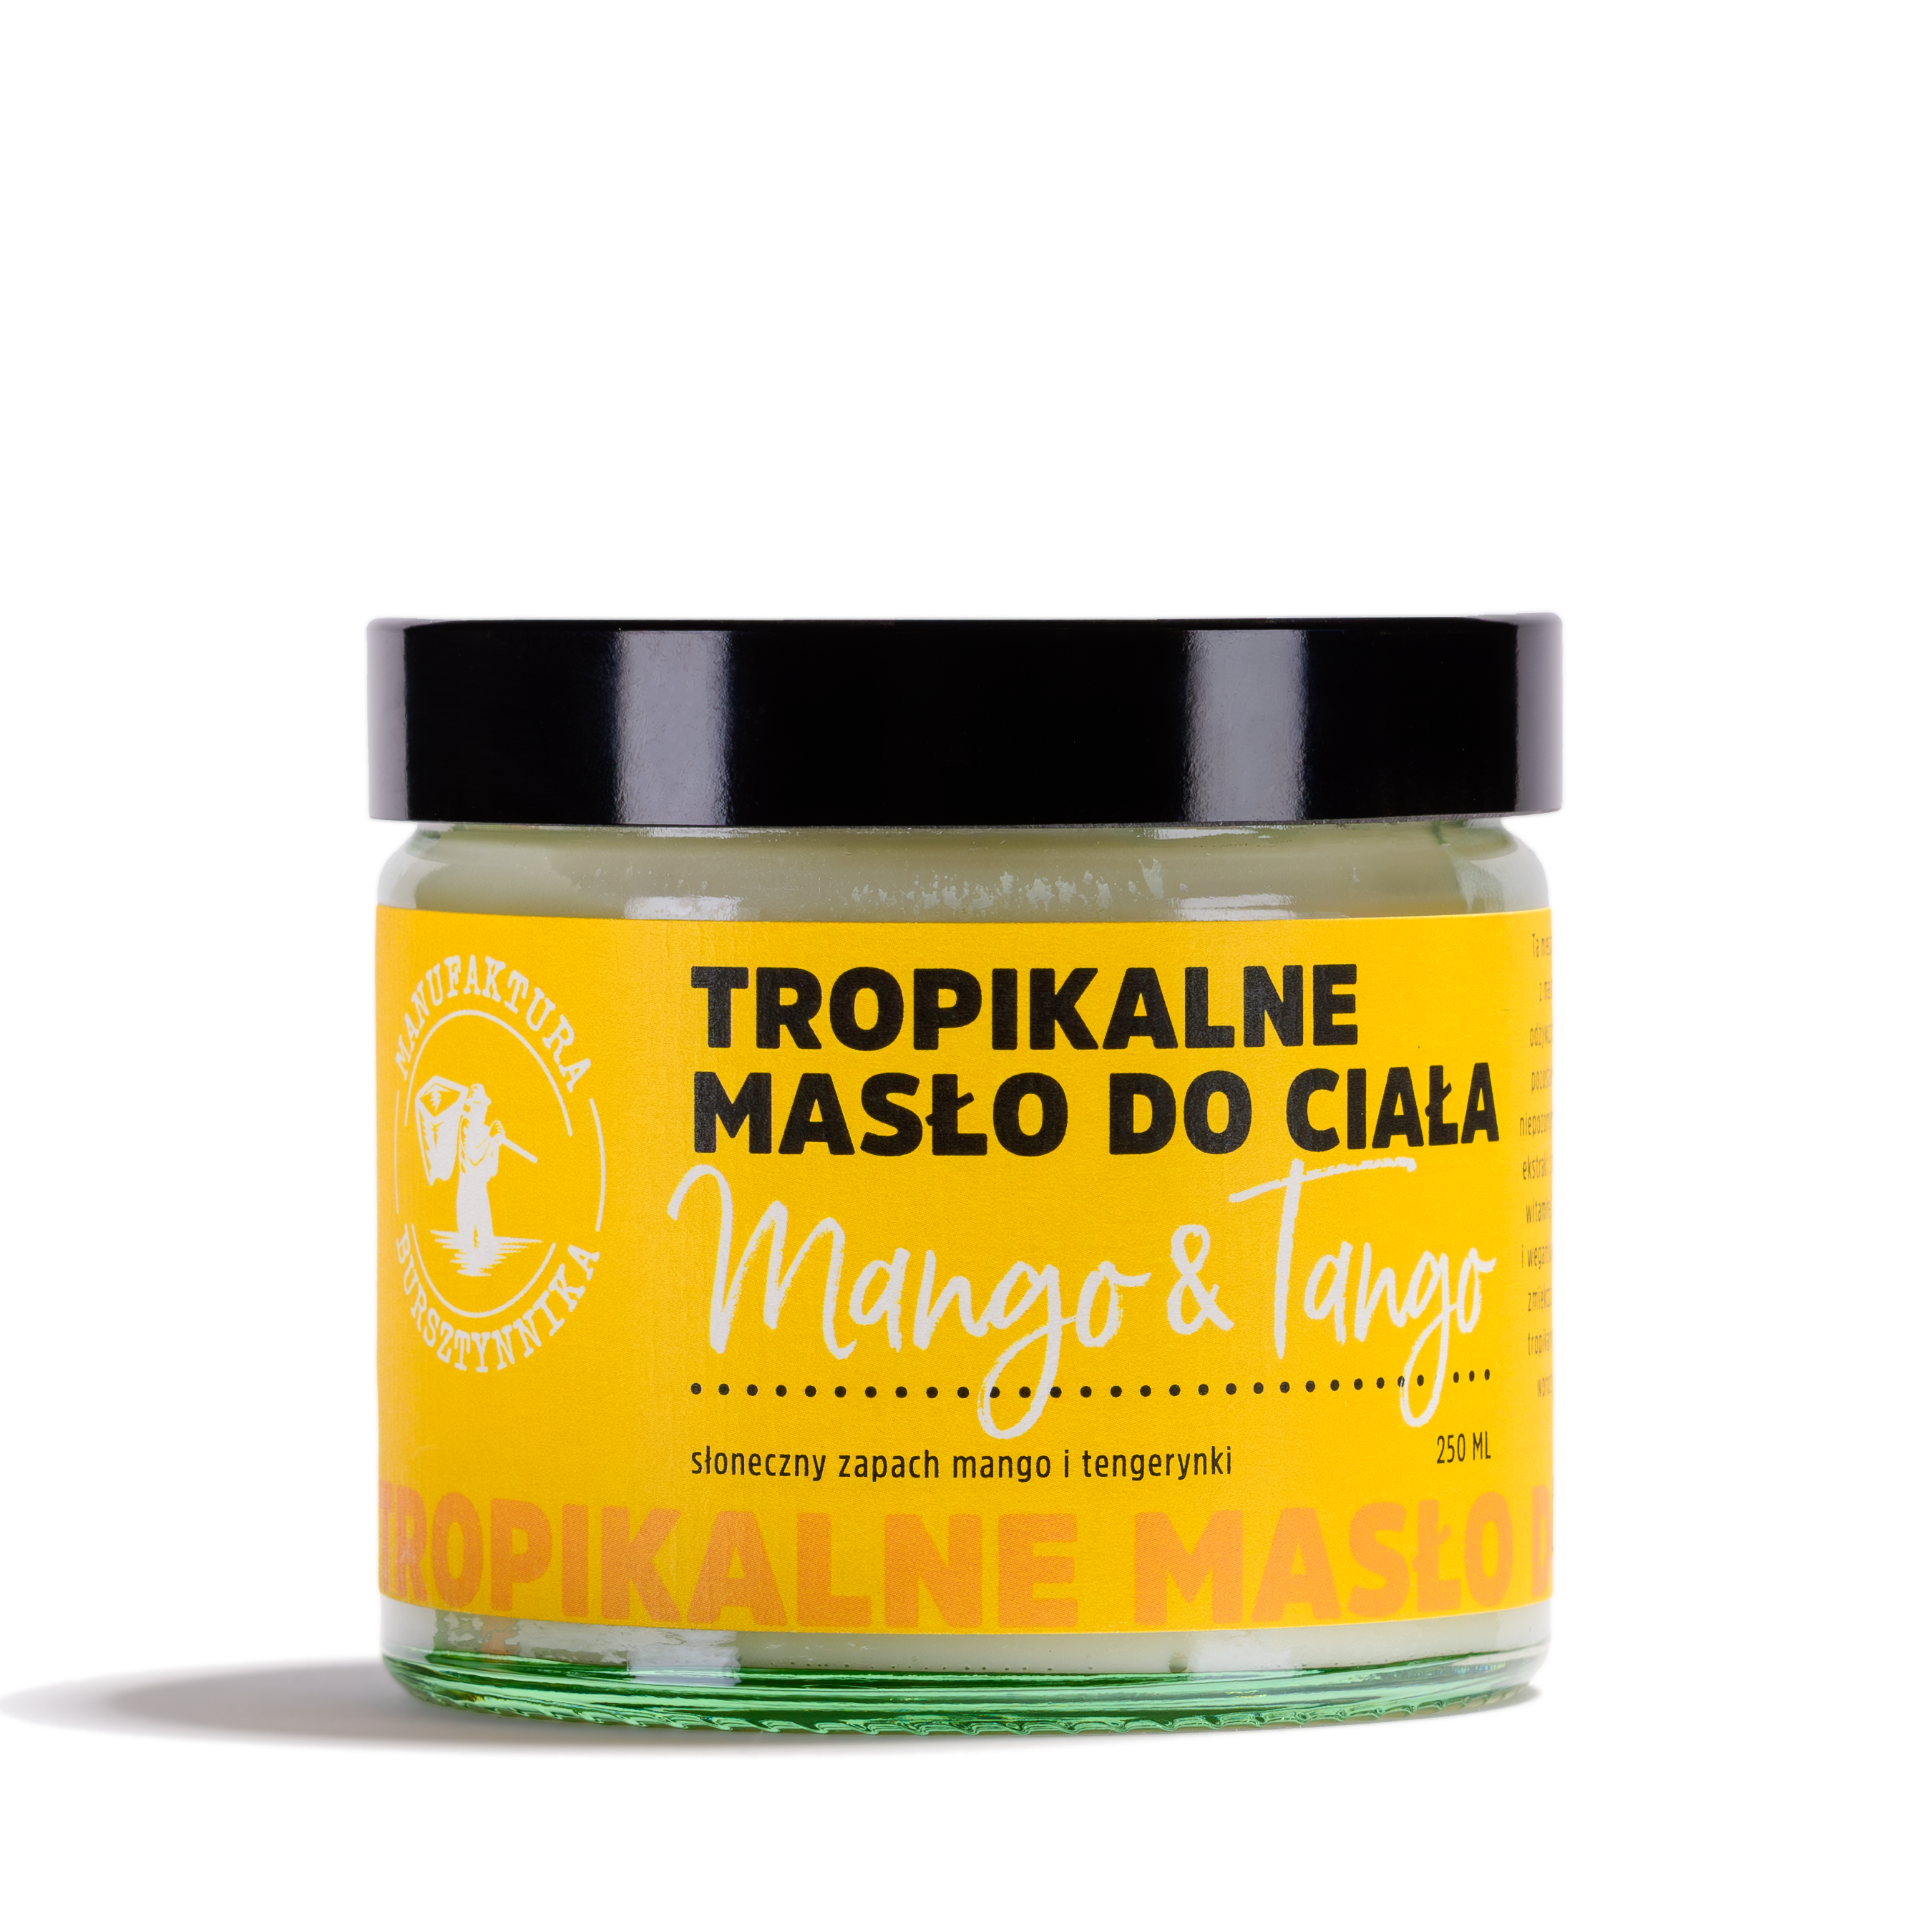 Tropikalne Masło do Ciała Mango & Tango